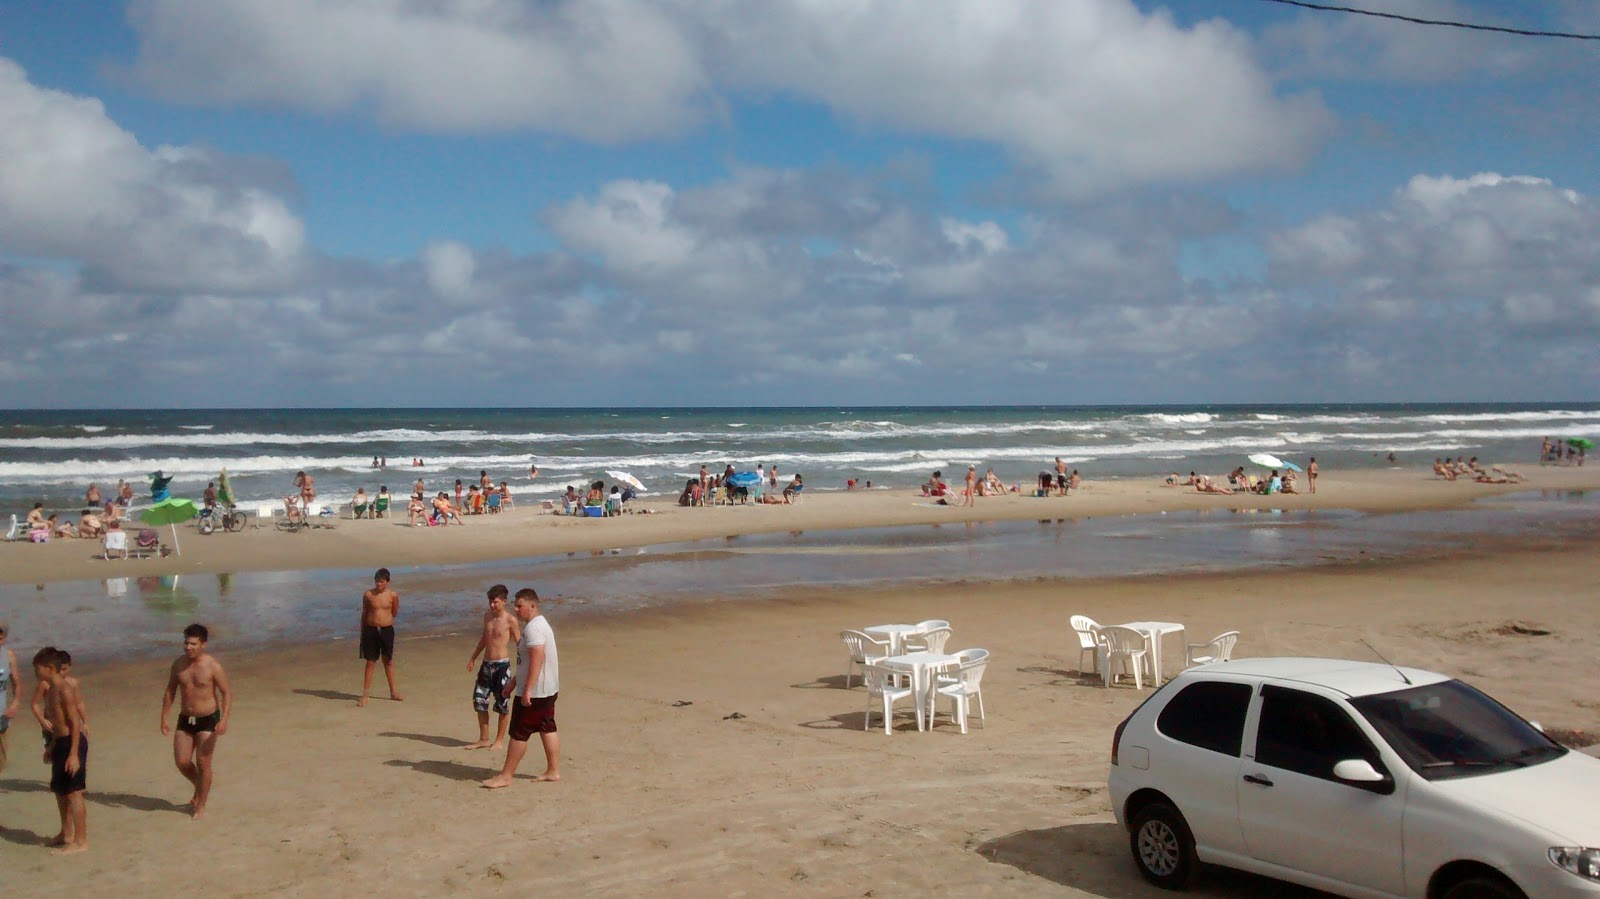 Praia de Cidreira'in fotoğrafı - rahatlamayı sevenler arasında popüler bir yer